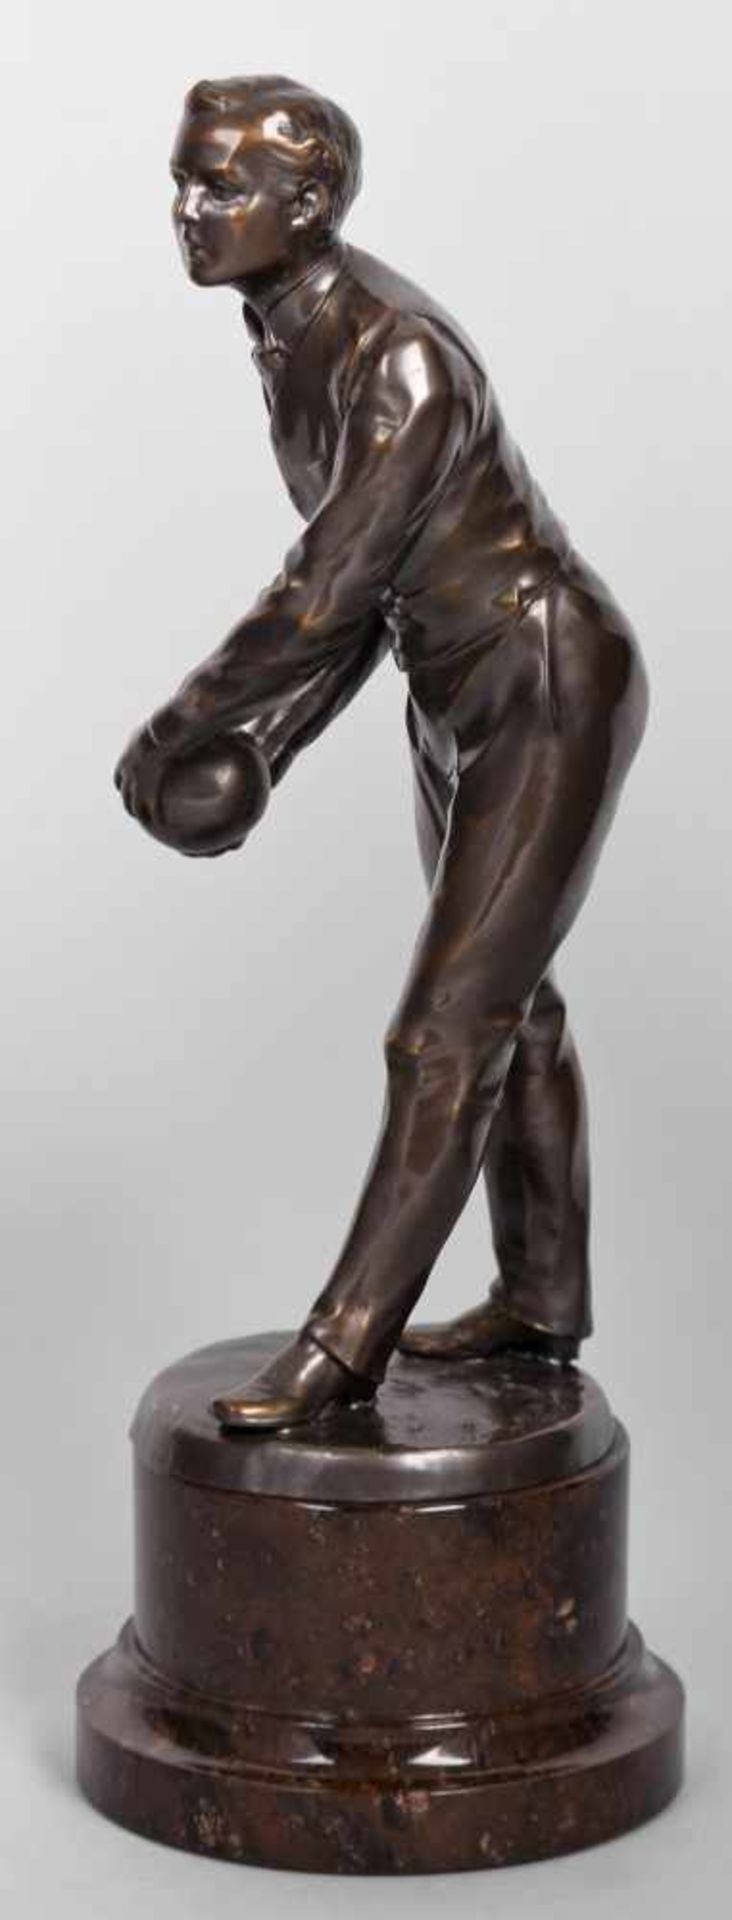 Keglerfigur Weißguss bronziert, elegant gekleideter Herr in der Wurfbewegung mit Kugel festgehalten, - Bild 3 aus 4